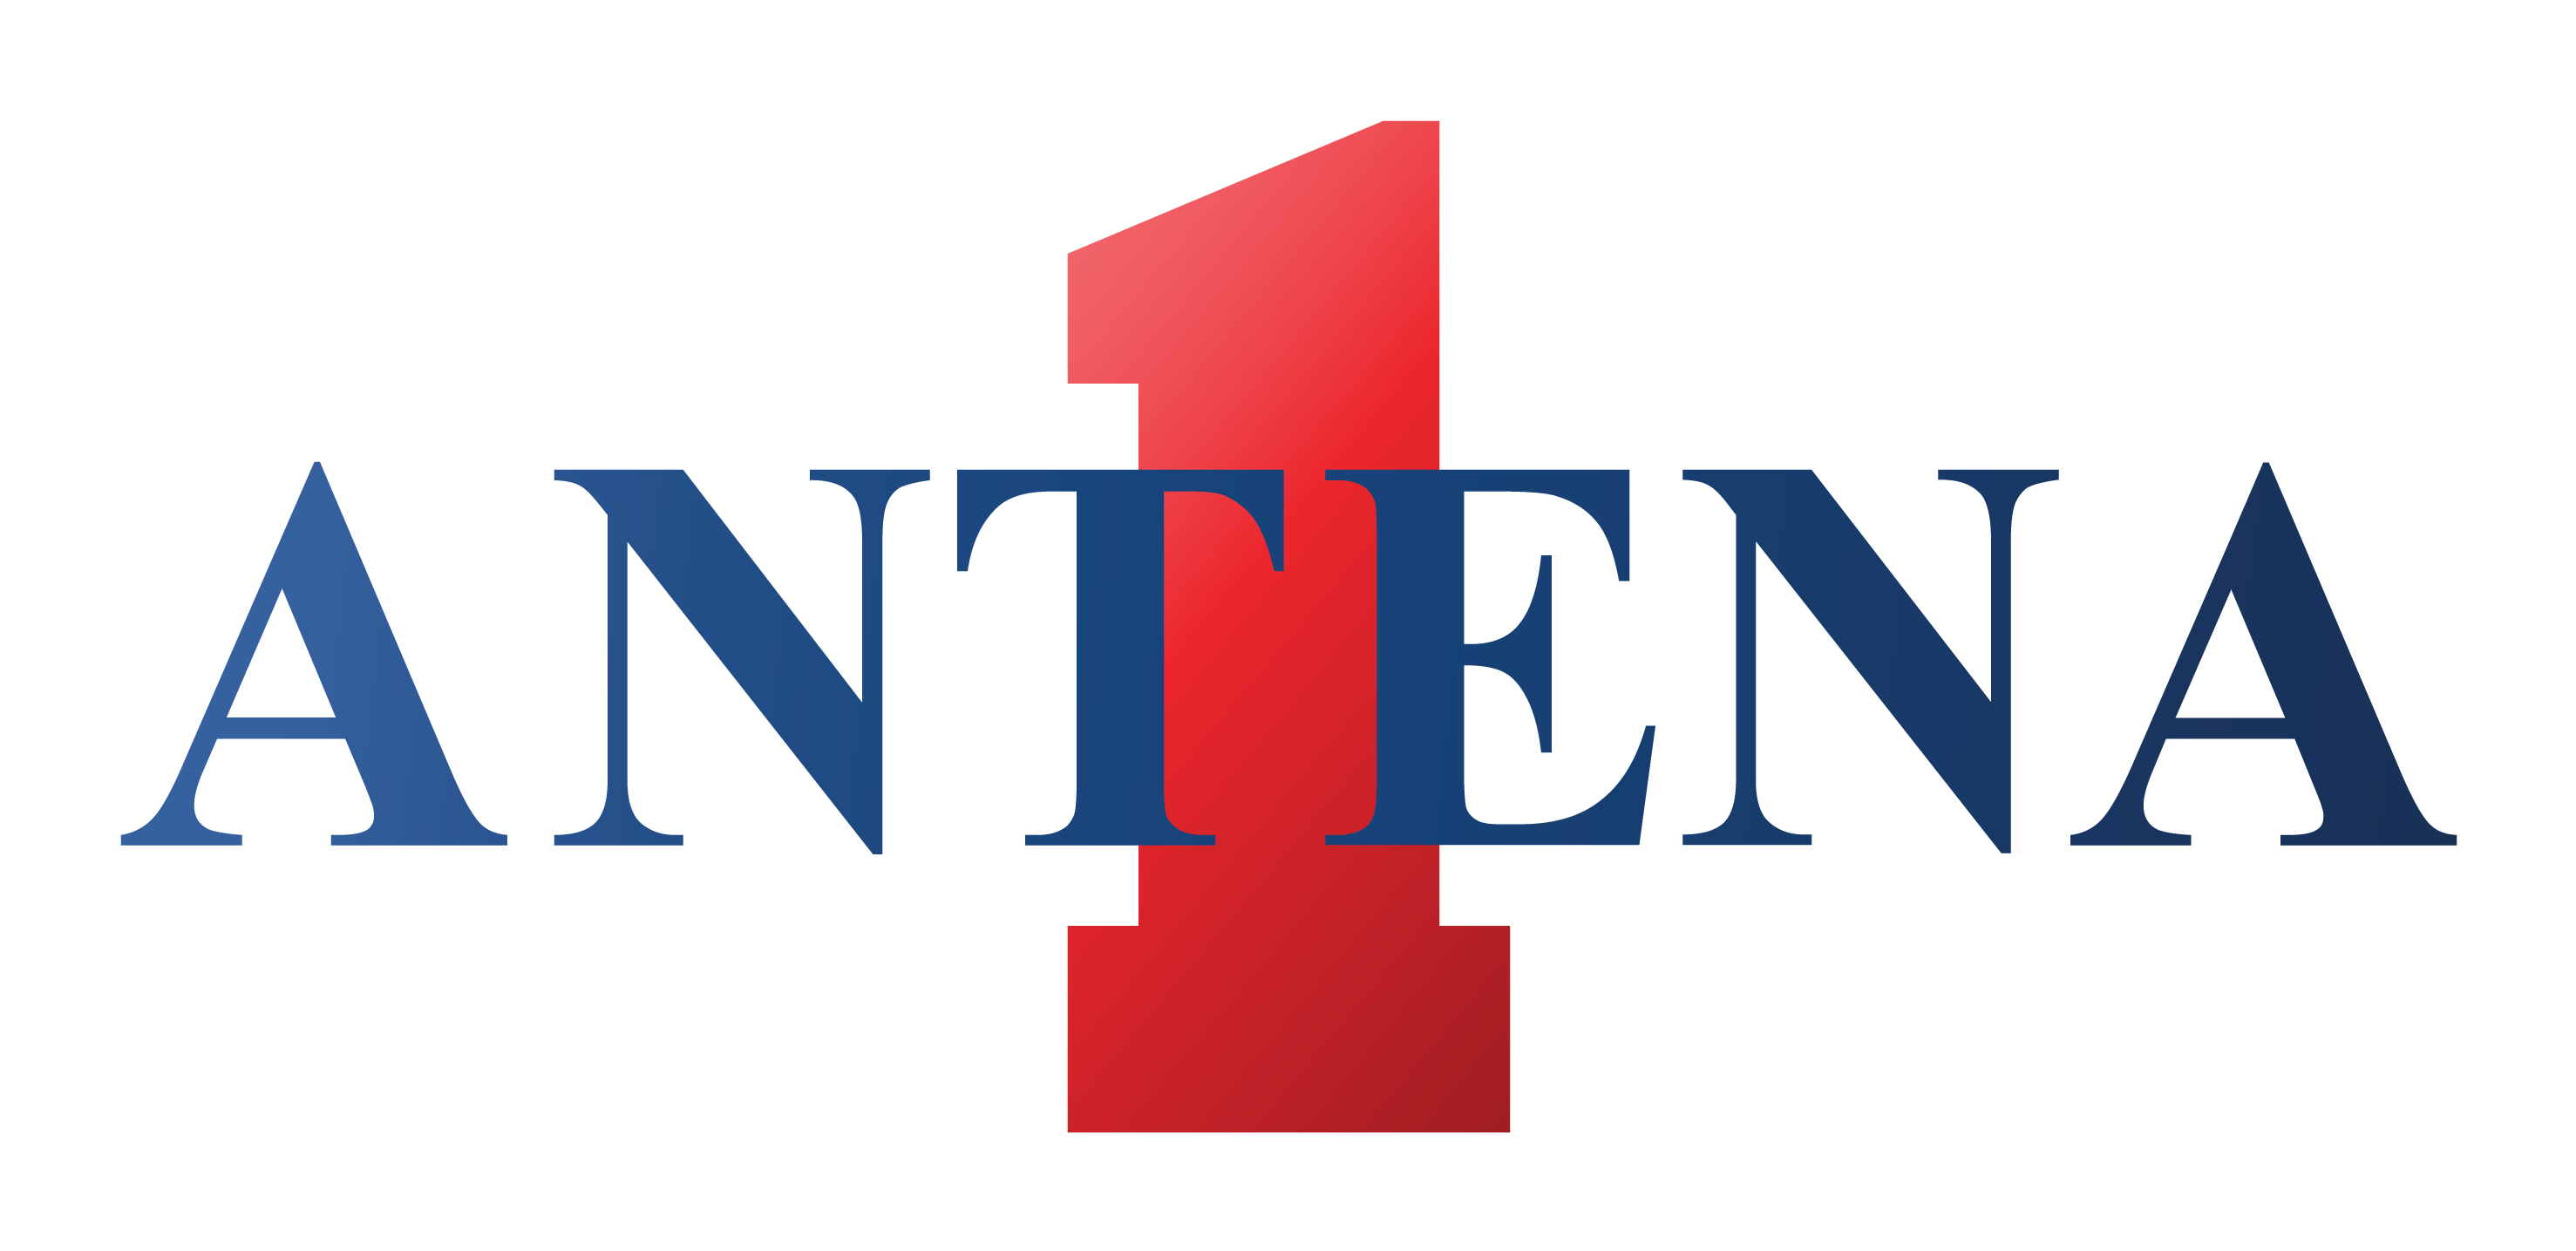 Descrição da imagem: logotipo da Antena1